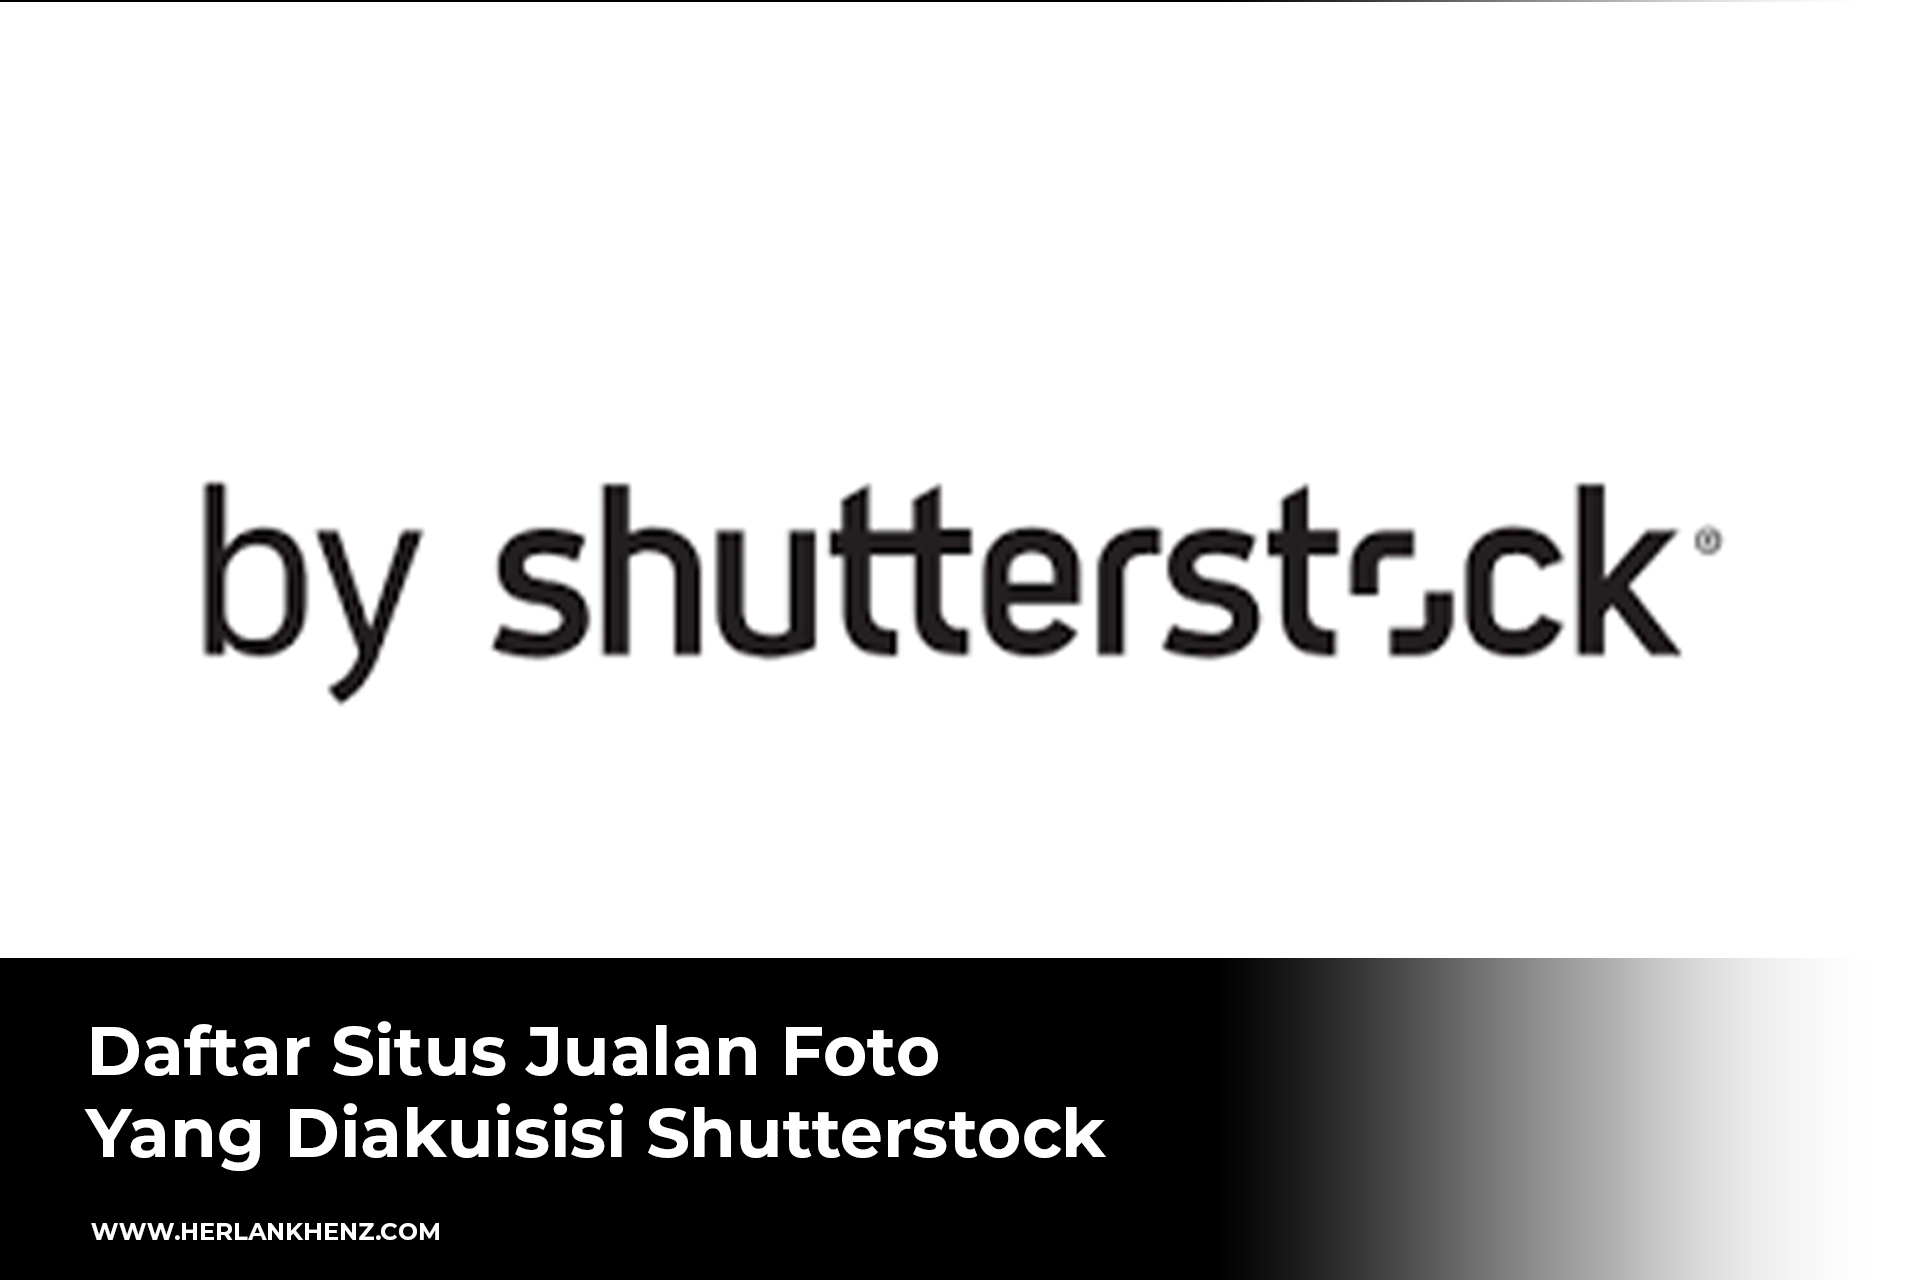 Lista de sites de venda de fotos adquiridos pela Shutterstock